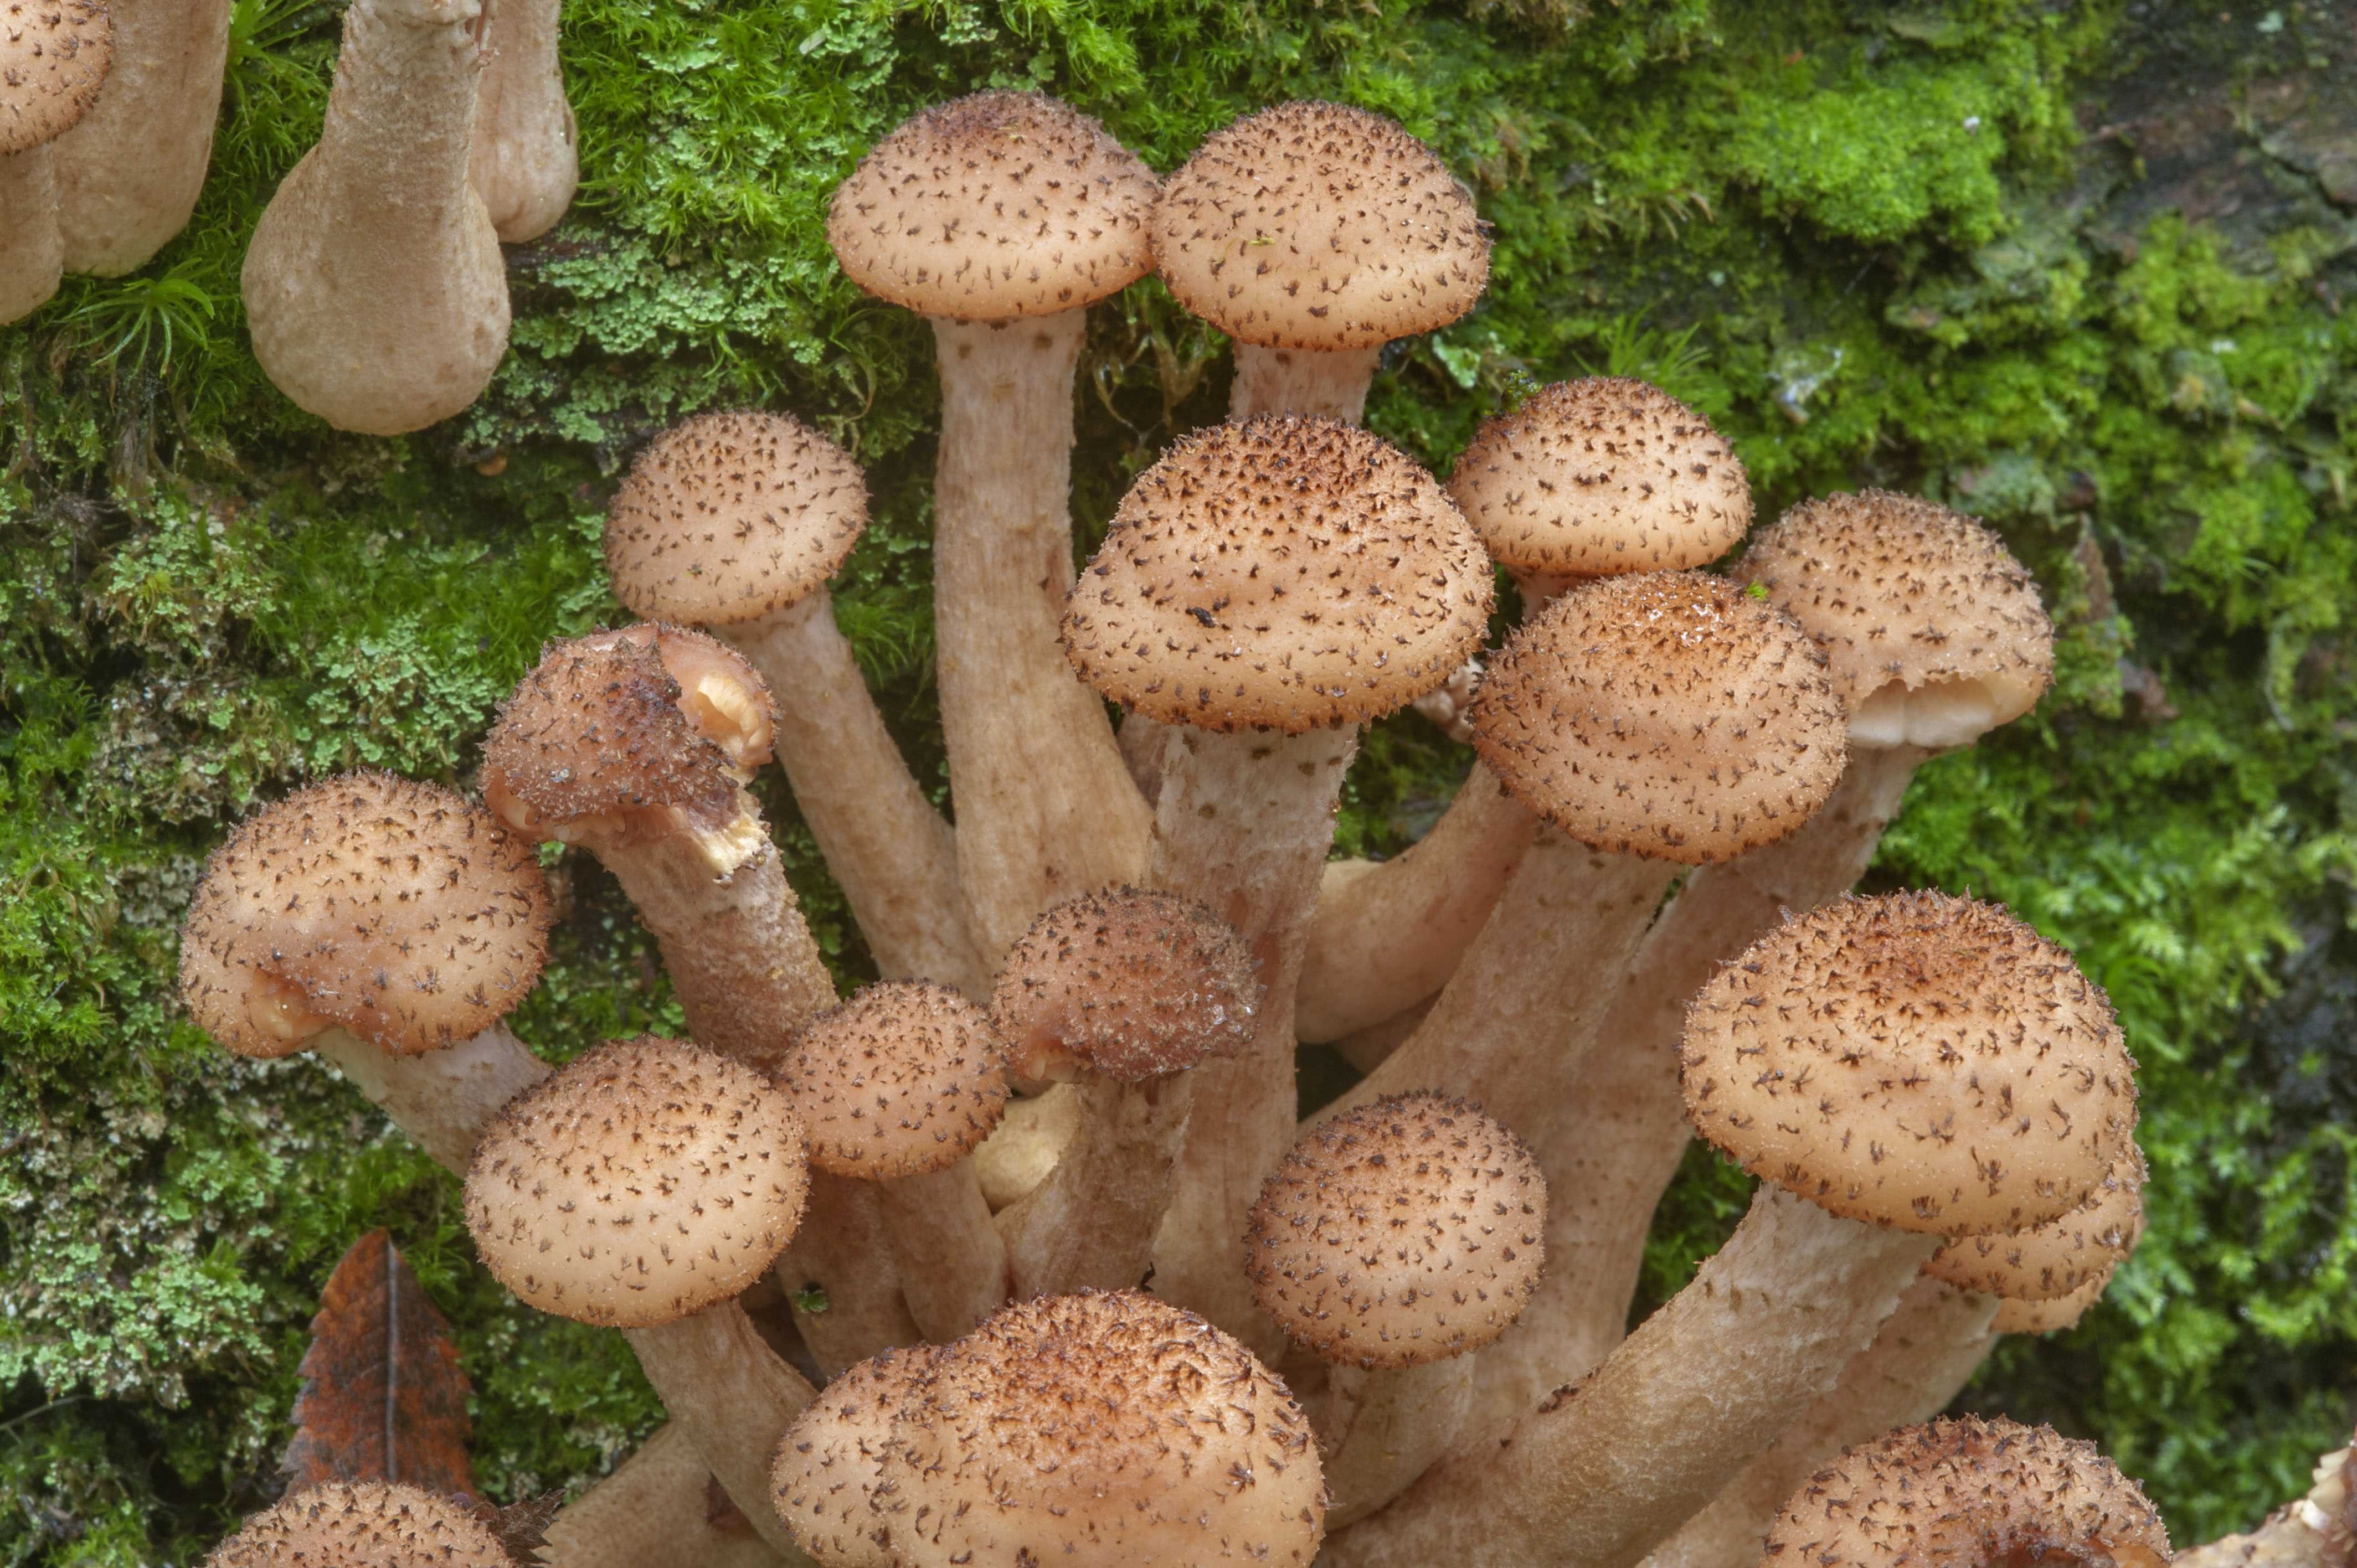 Северные опята грибы (56 фото) - 56 фото